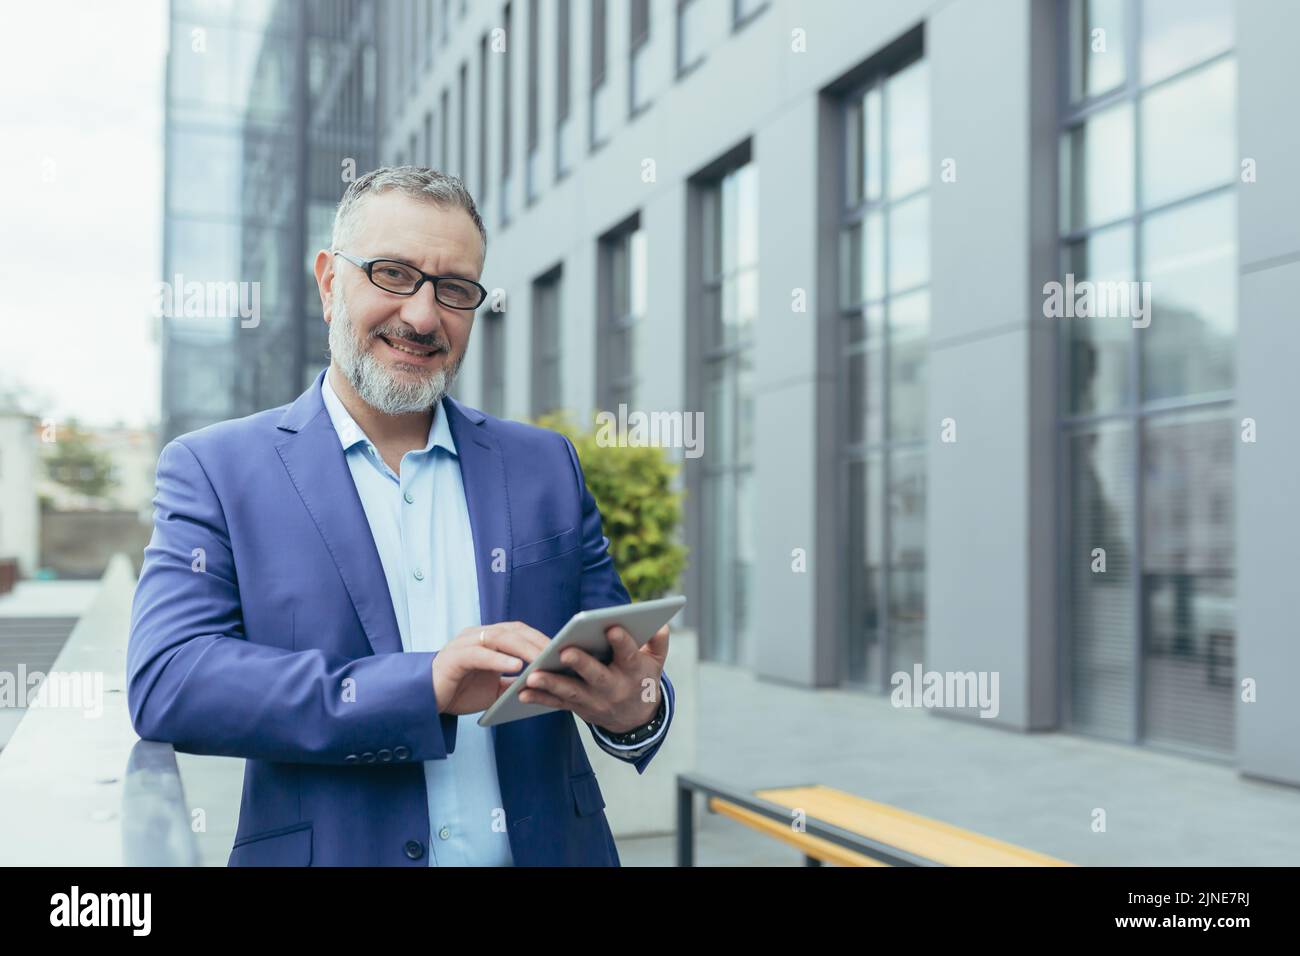 Ritratto di un uomo d'affari di successo al di fuori degli uffici con tablet in mano, investitore in occhiali e tuta aziendale sorridente e guardando la fotocamera, soddisfatto e fiducioso banchiere vicino alla banca Foto Stock